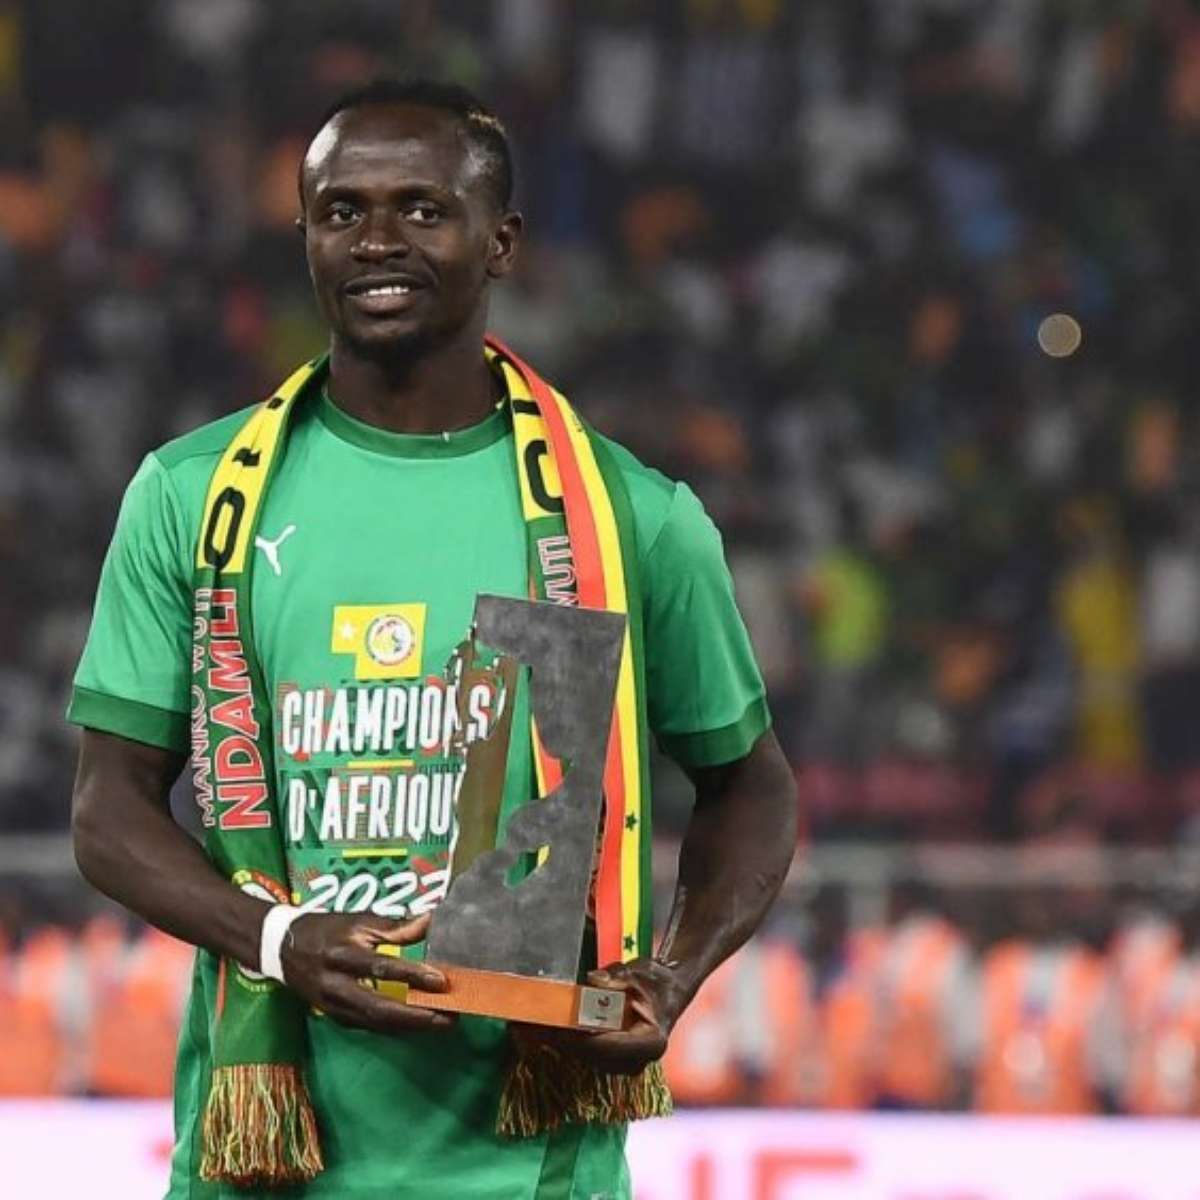 Mané homenageia seus companheiros de Senegal por participação na Copa